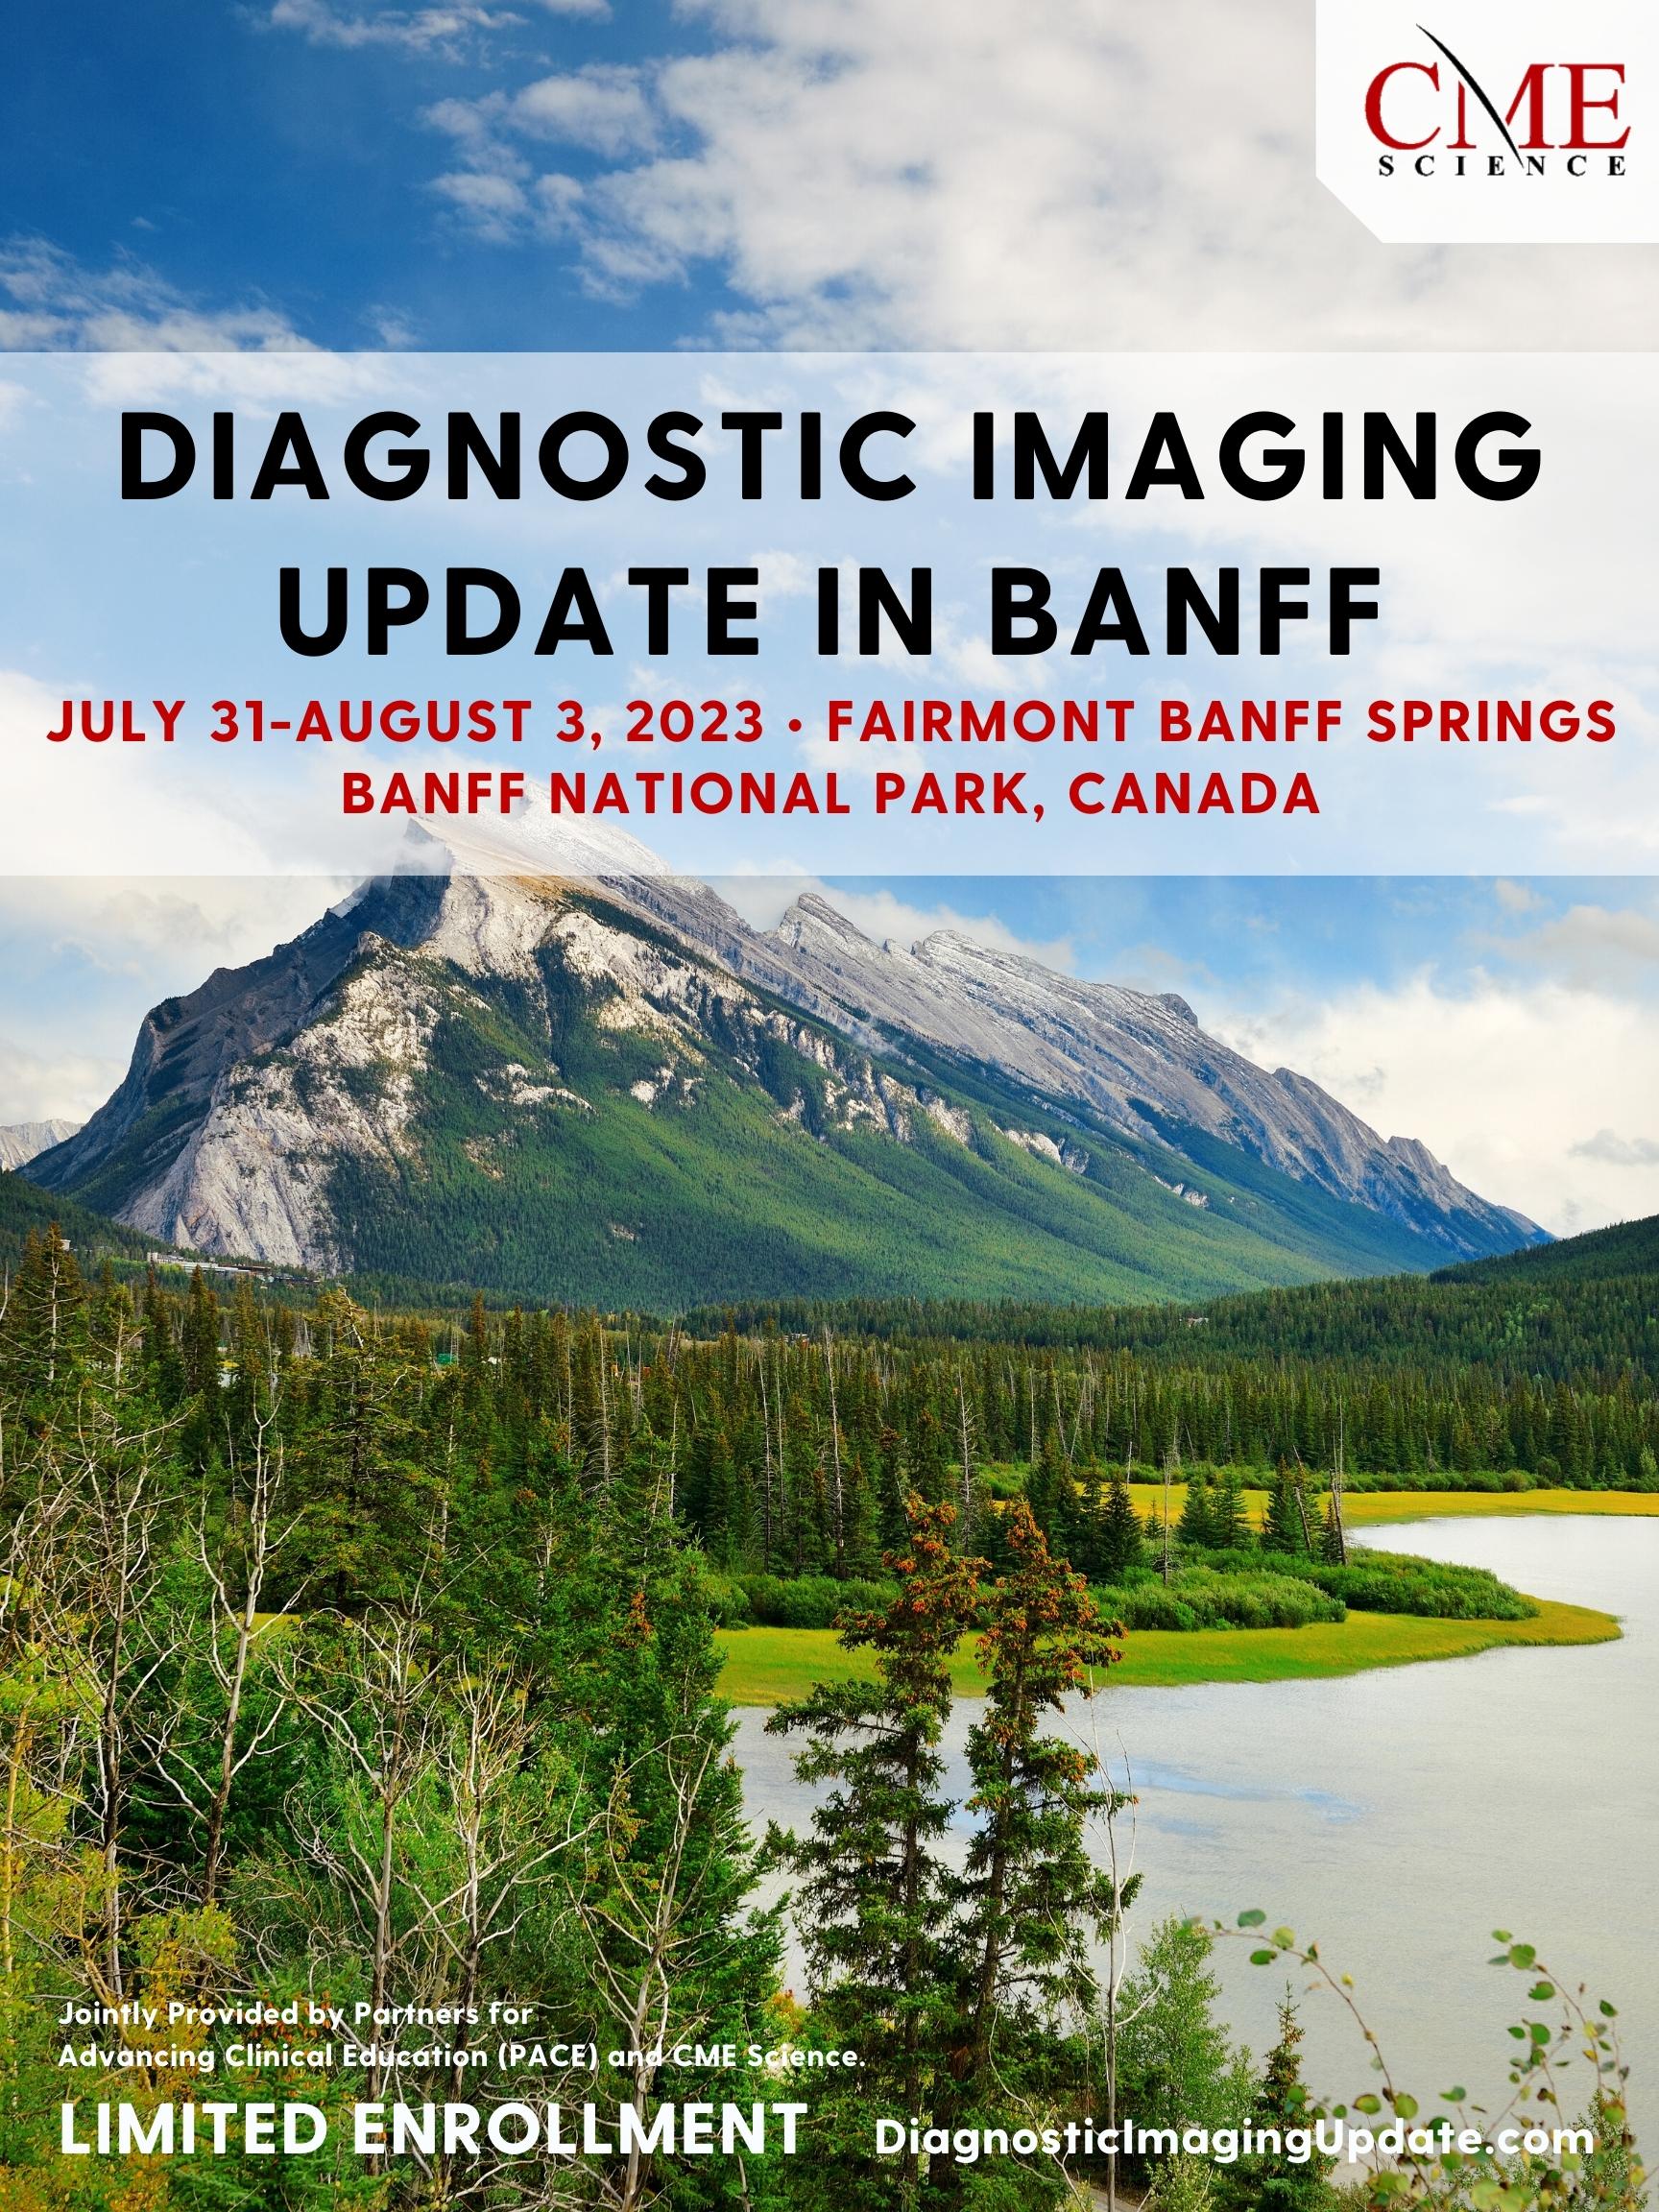 Fairmont Banff Springs, Canada Diagnostic Imaging Update